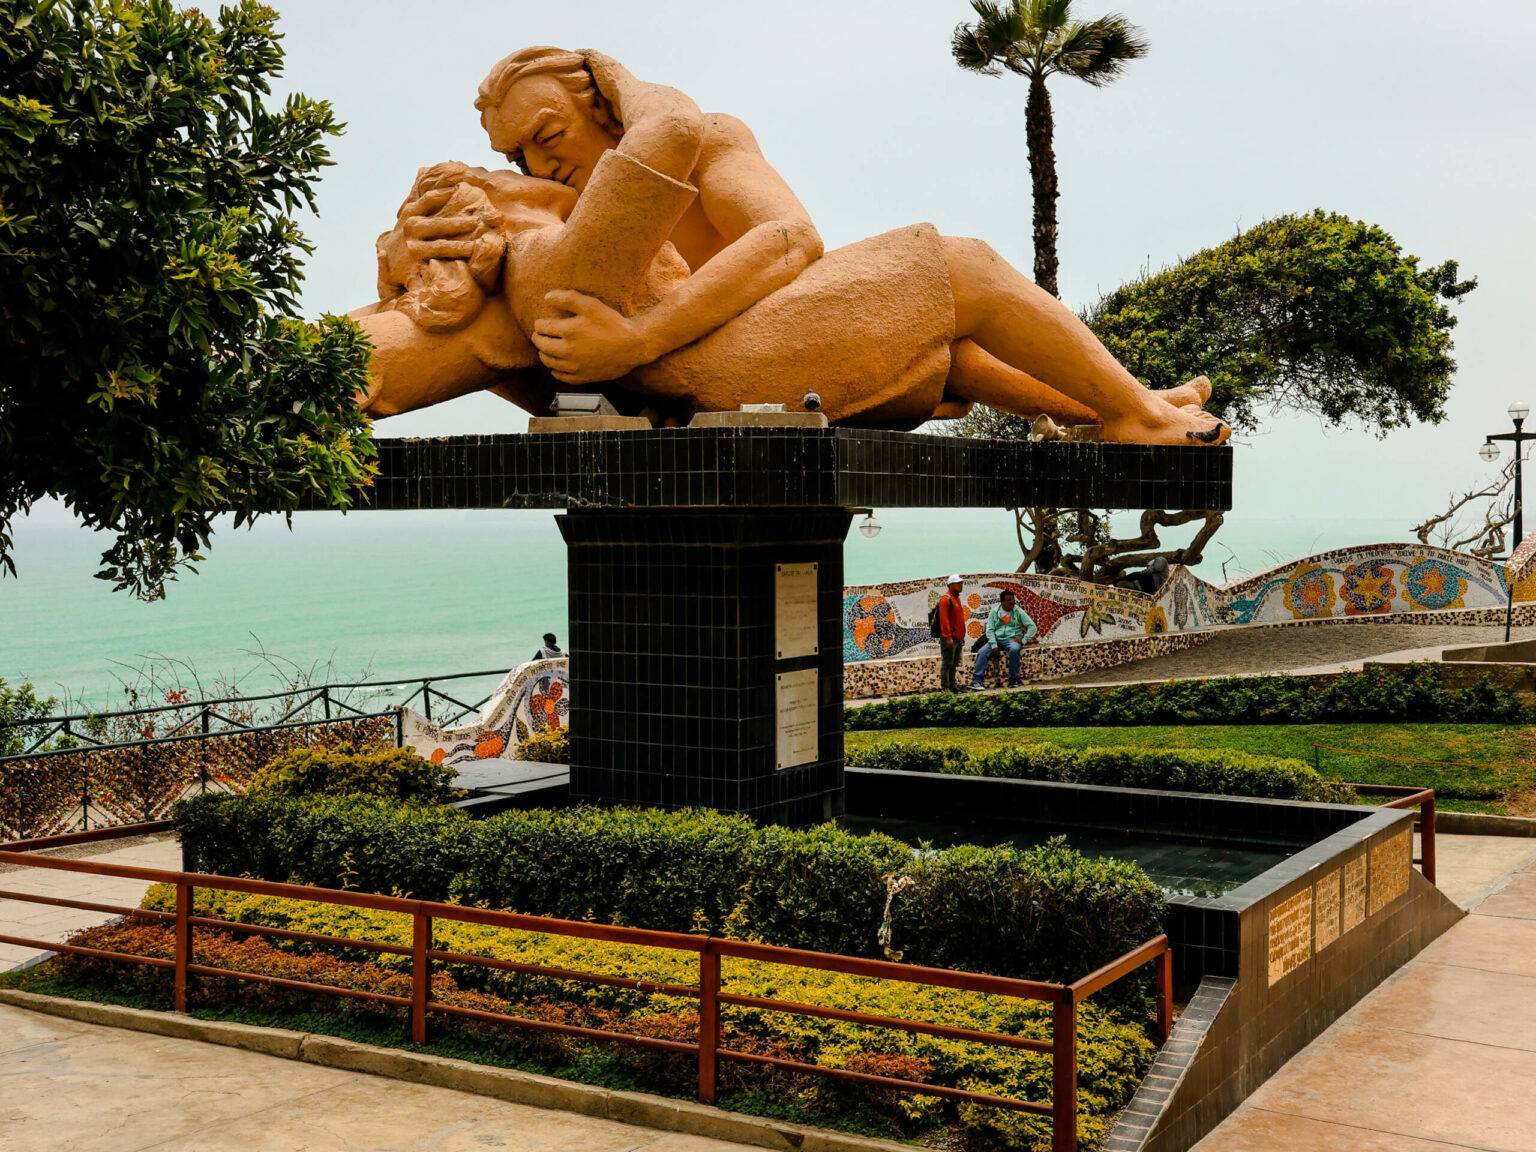 Eine Statue zweier sich küssender Menschen in Limas Park der Liebenden mit türkisfarbenem Meer im Hintergrund.